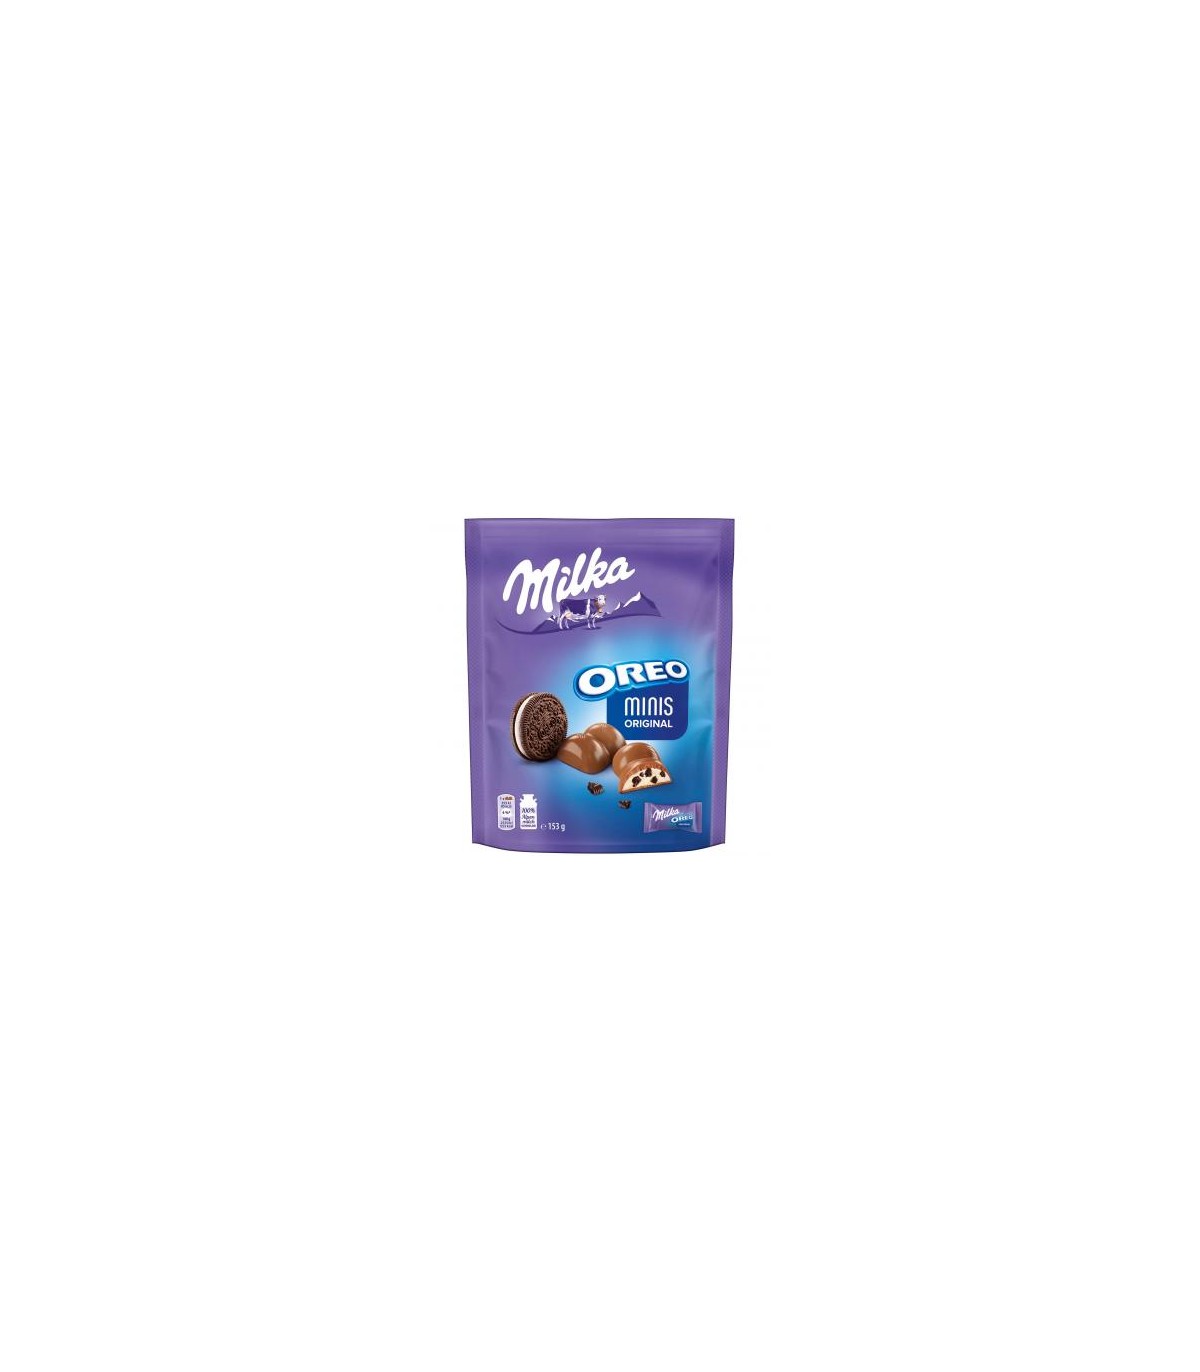 Milka شکلات شیری اورئو مینیز 135 گرمی میلکا